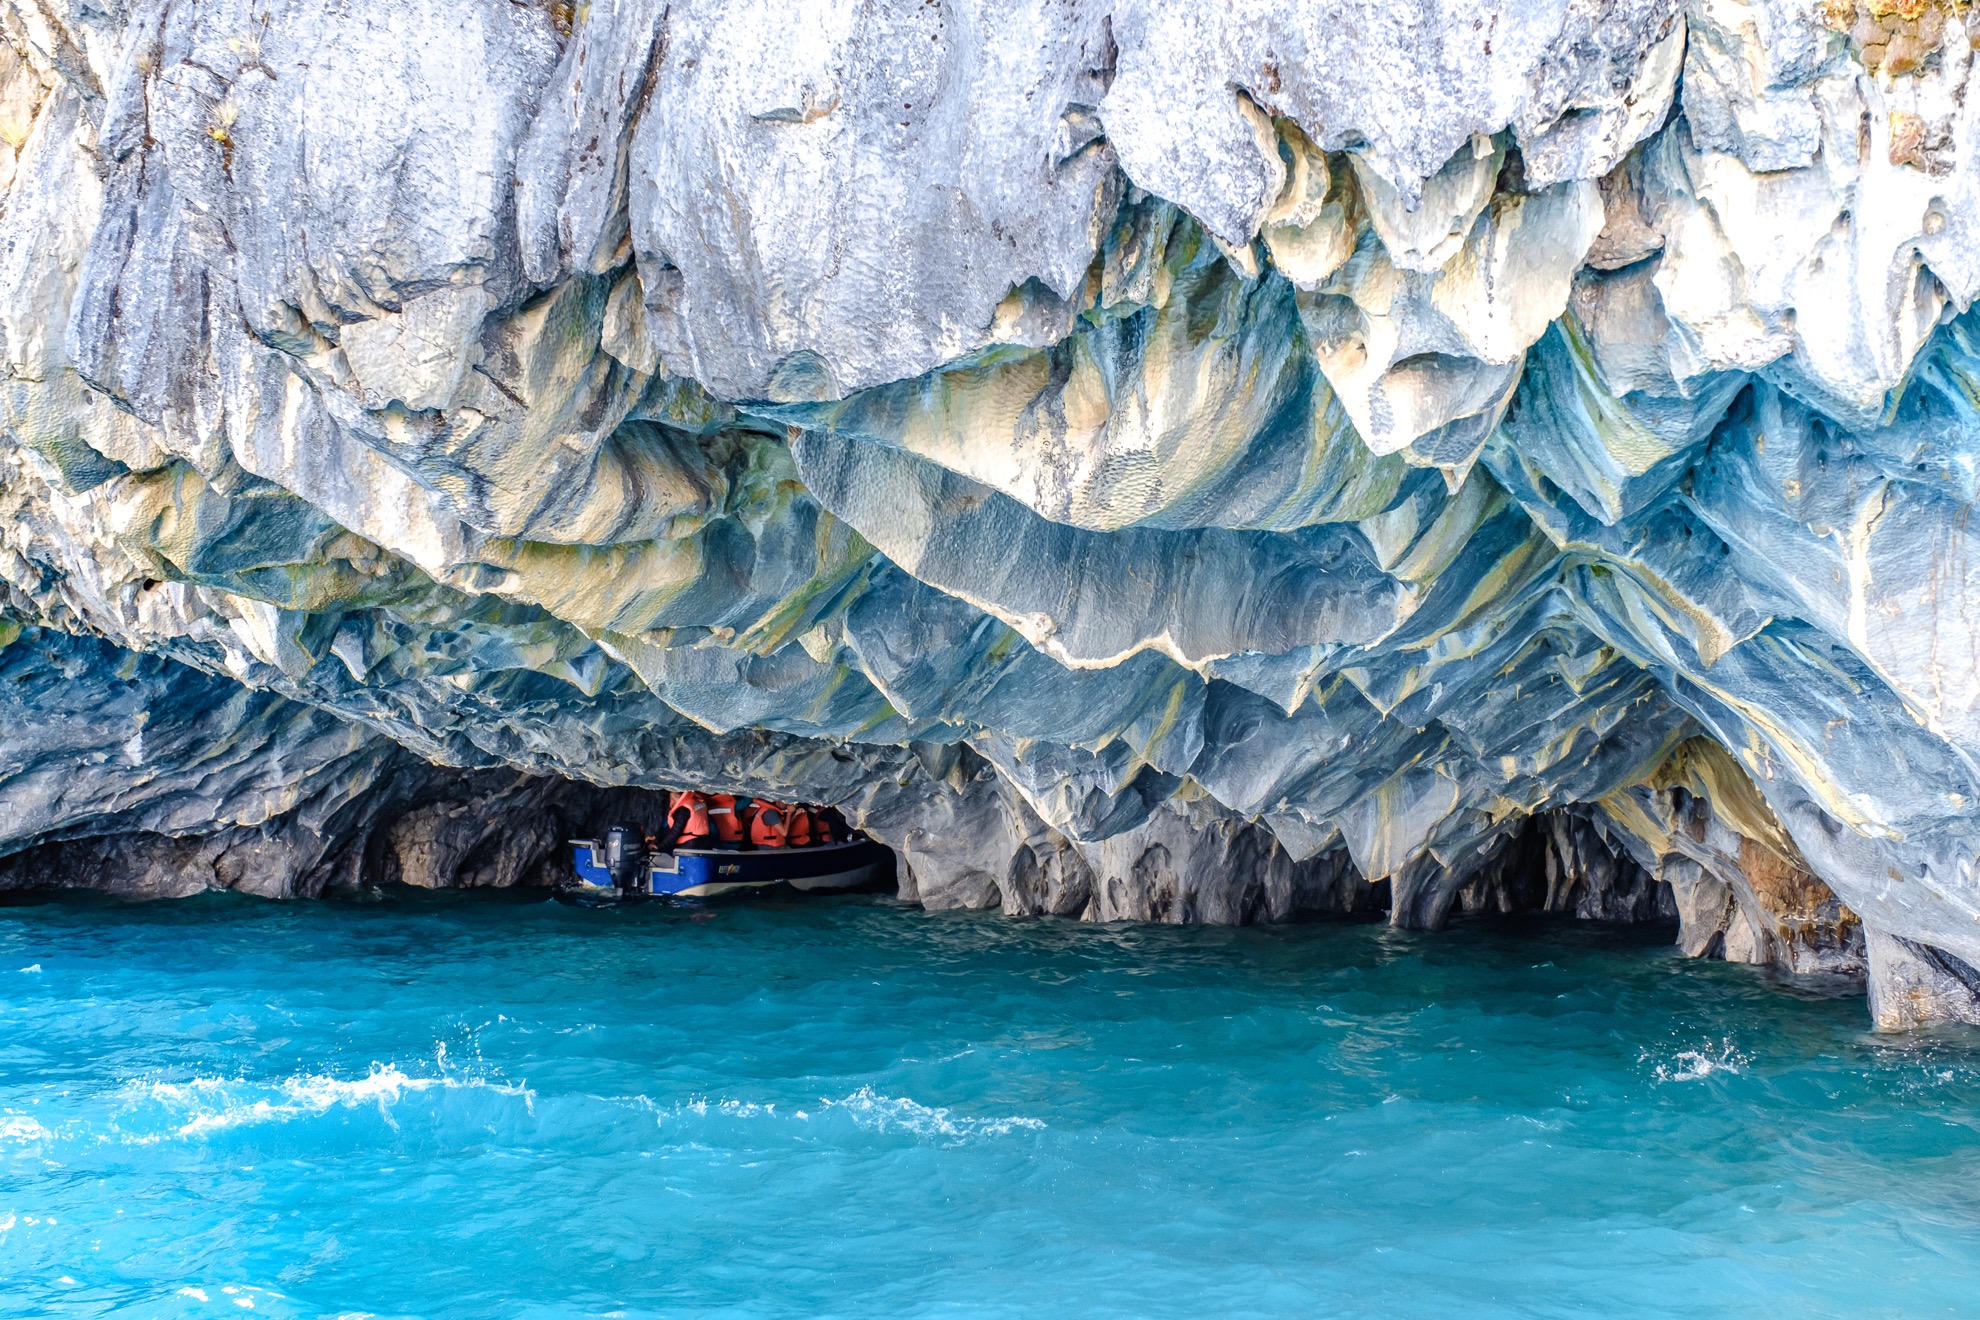 Realizzati in marmo puro, queste incredibili grotte cambiano colore durante tutto l'anno